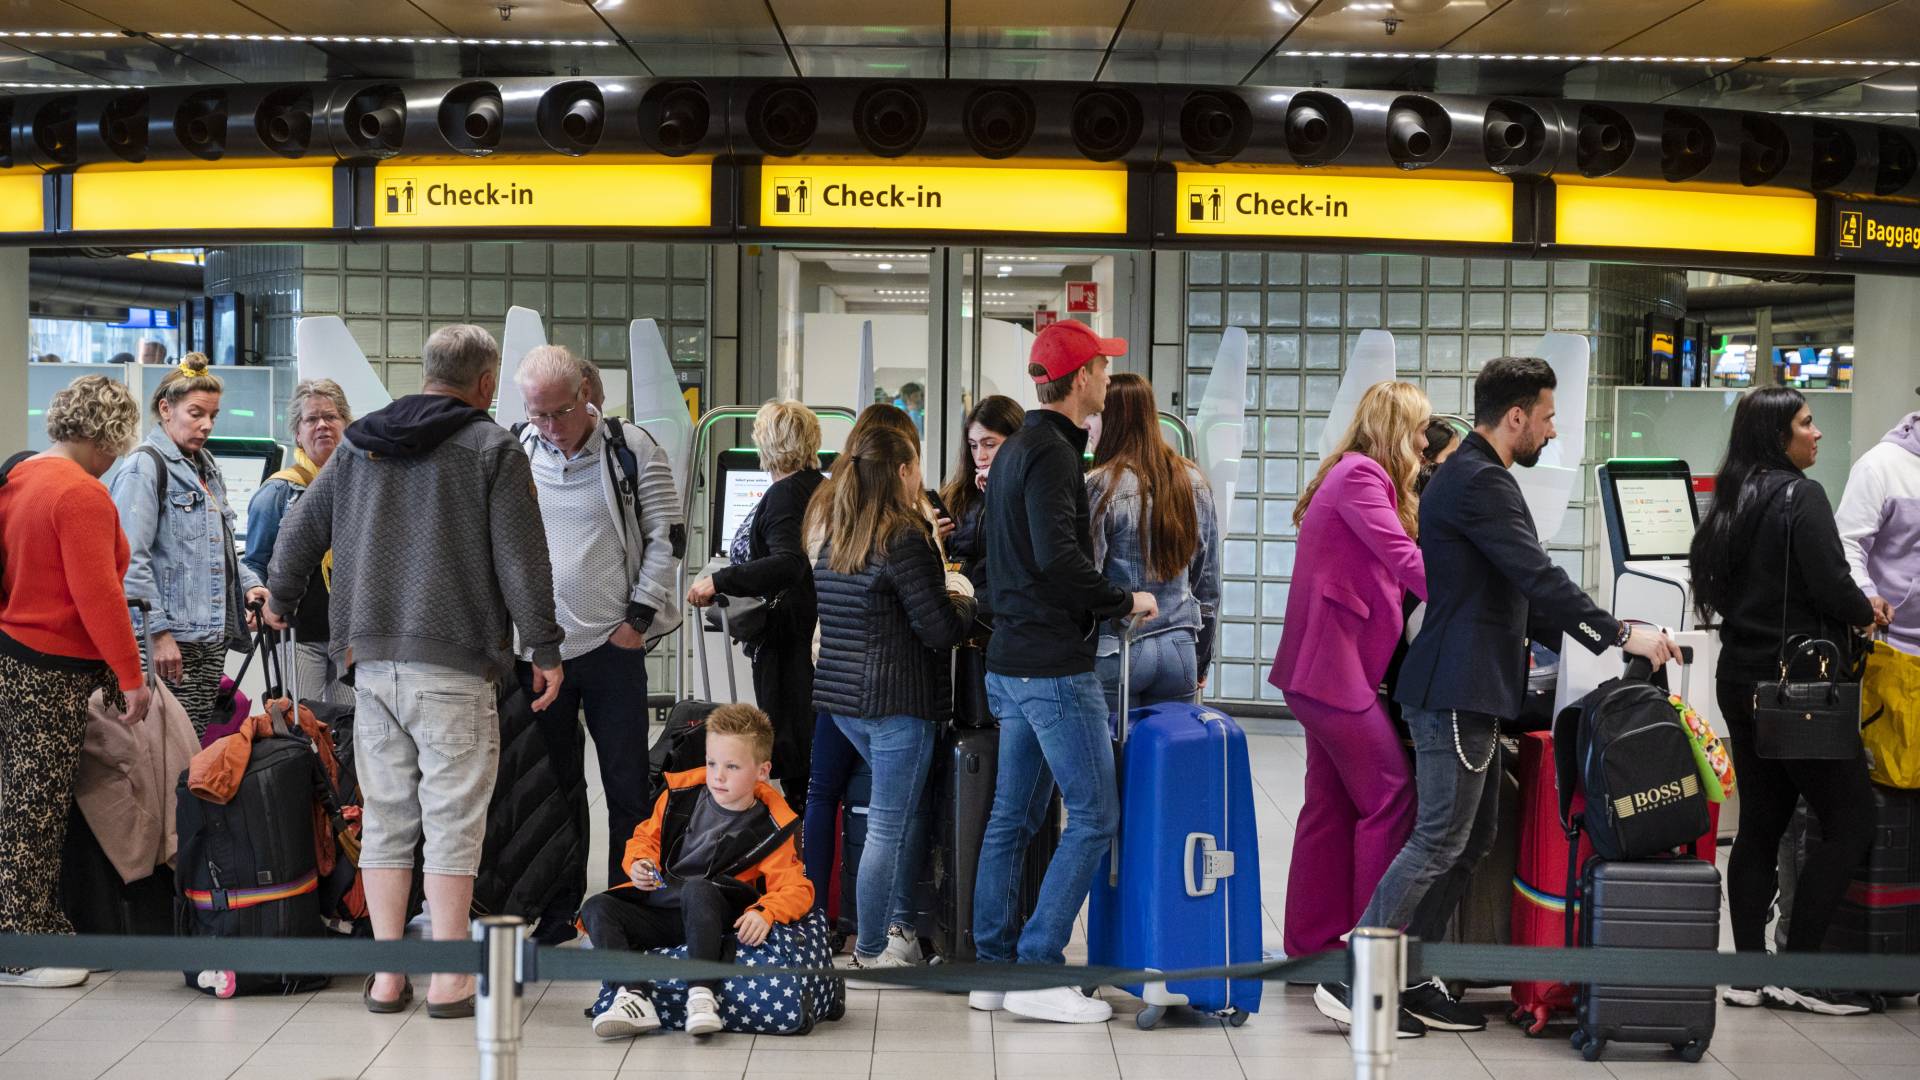 شركات الطيران في هولندا تطالب بتعويضات أضرار من إدارة مطار سيخبول